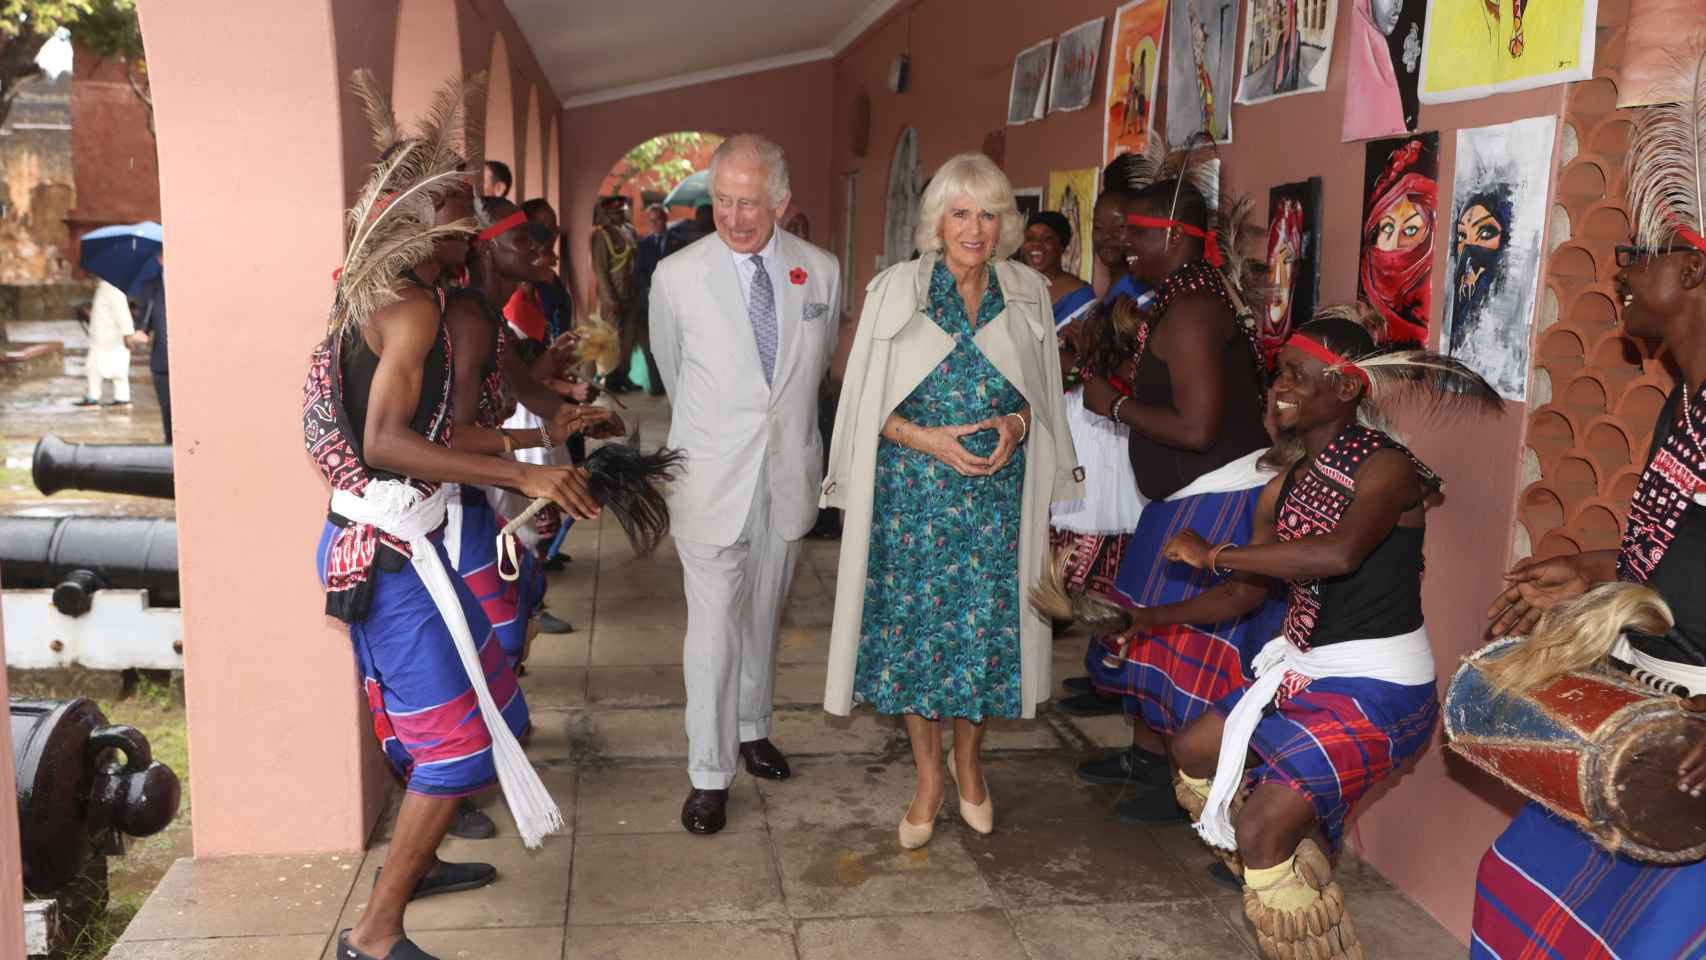 Los reyes de Inglaterra durante su viaje a Kenia. Esta imagen fue tomada en Mombasa.